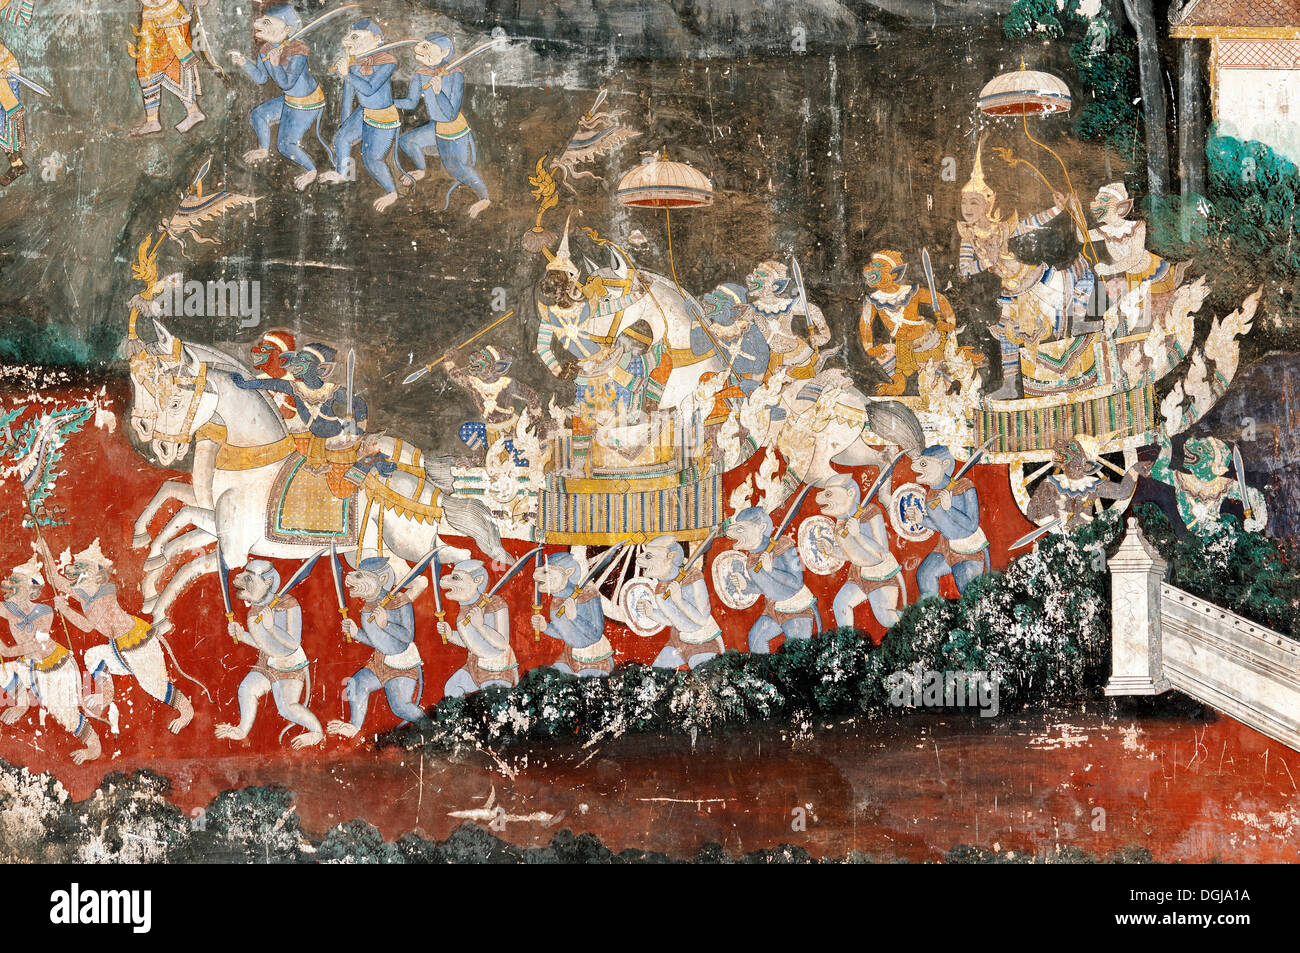 Peinture murale, également connu sous le nom de Ramayana, en plein air avec des scènes de la version khmère de l'épopée indienne du Ramayana classique dans le Banque D'Images